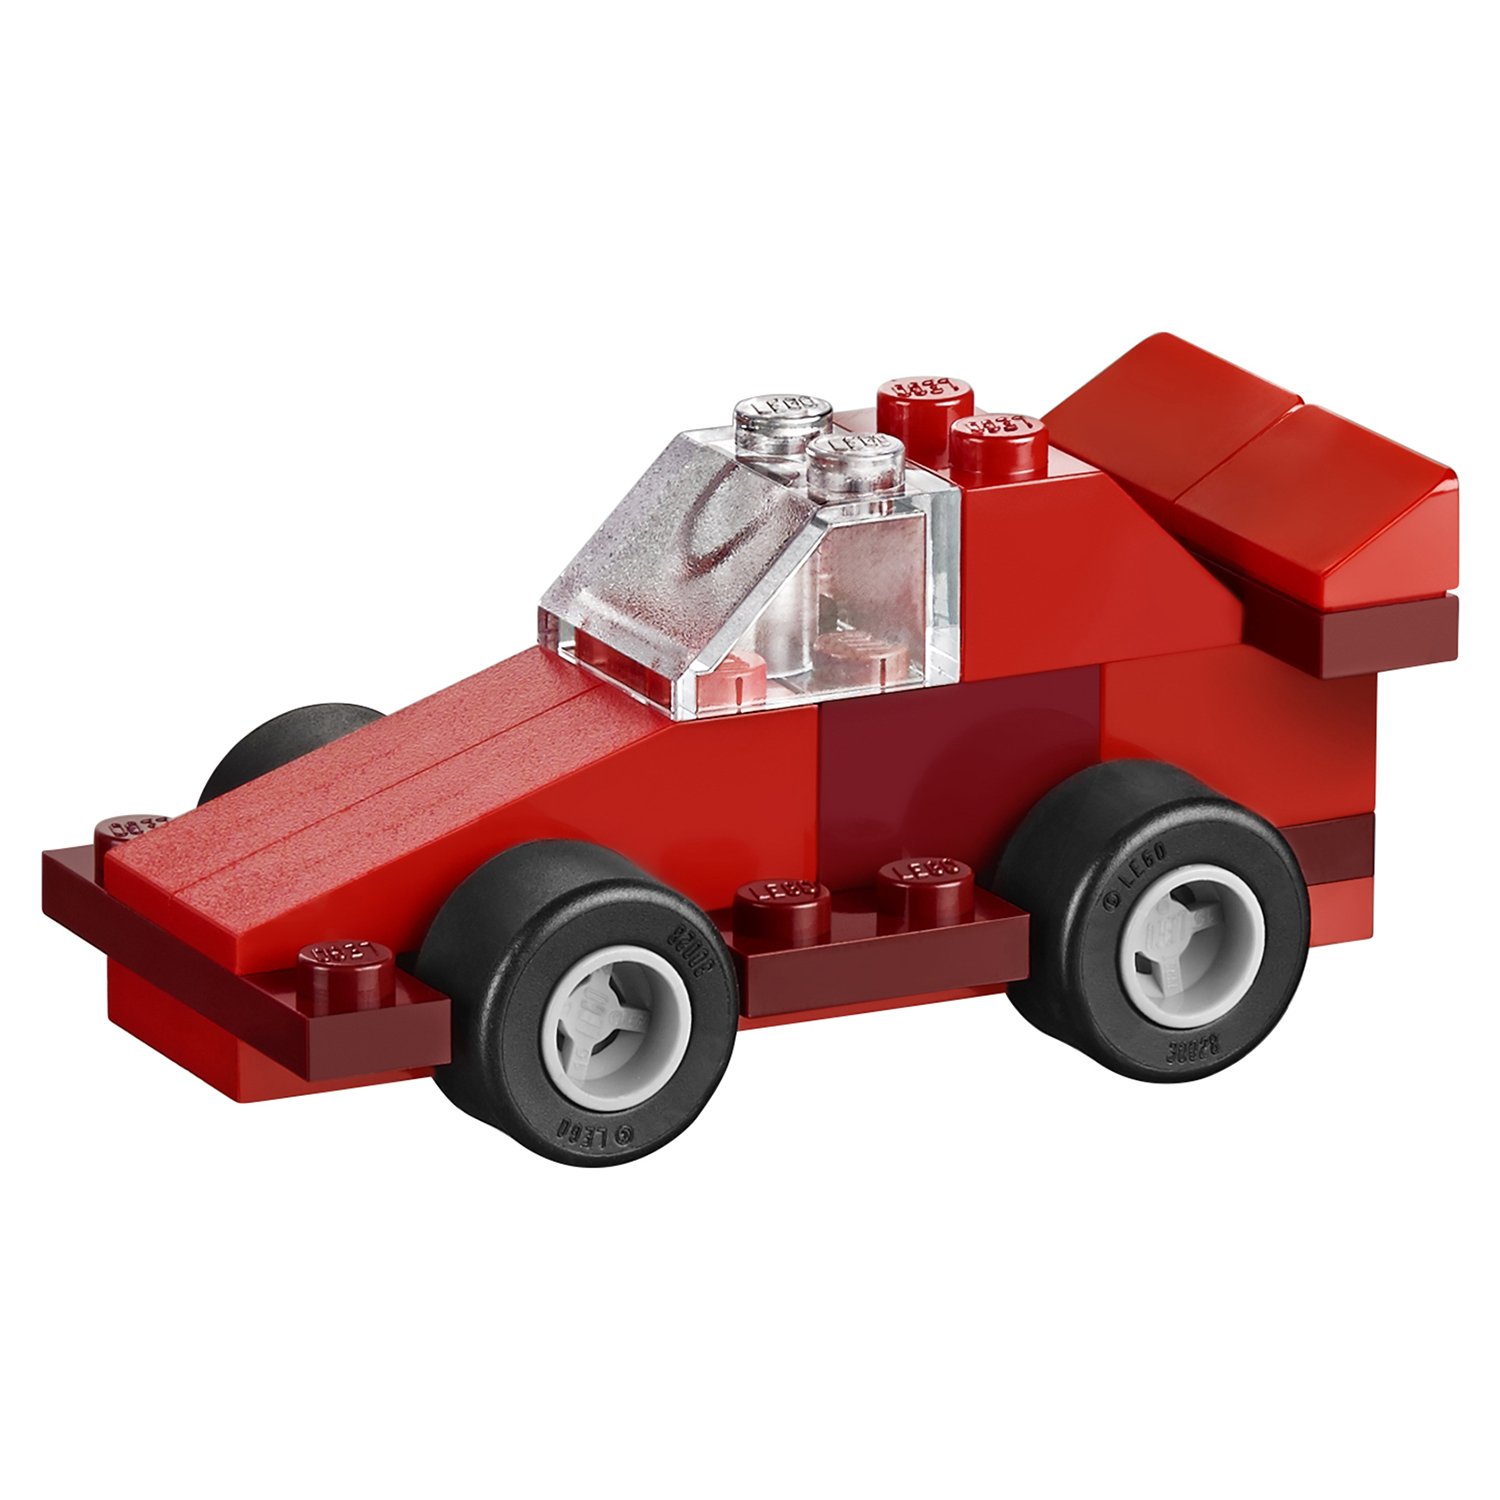 Конструктор LEGO Classic 10692 Творческие кирпичики